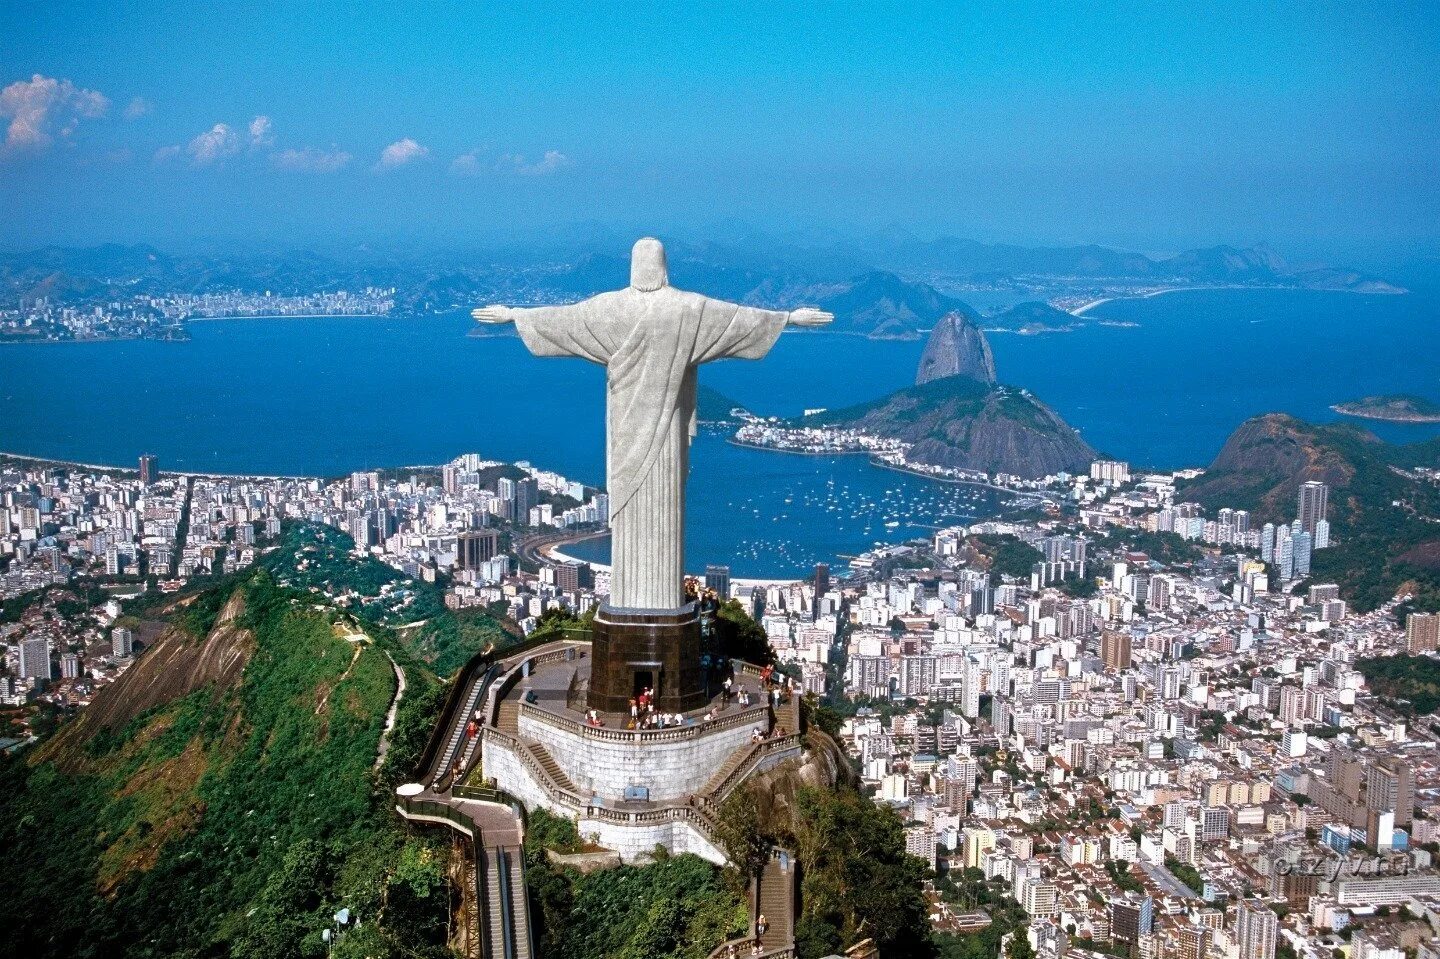 Статуя искупителя. Статуя Христа-Искупителя Бразилия. Христос Искупитель Рио де Жанейро. Статуя Иисуса в Рио де Жанейро. Иисус Христос в Рио де Жанейро.